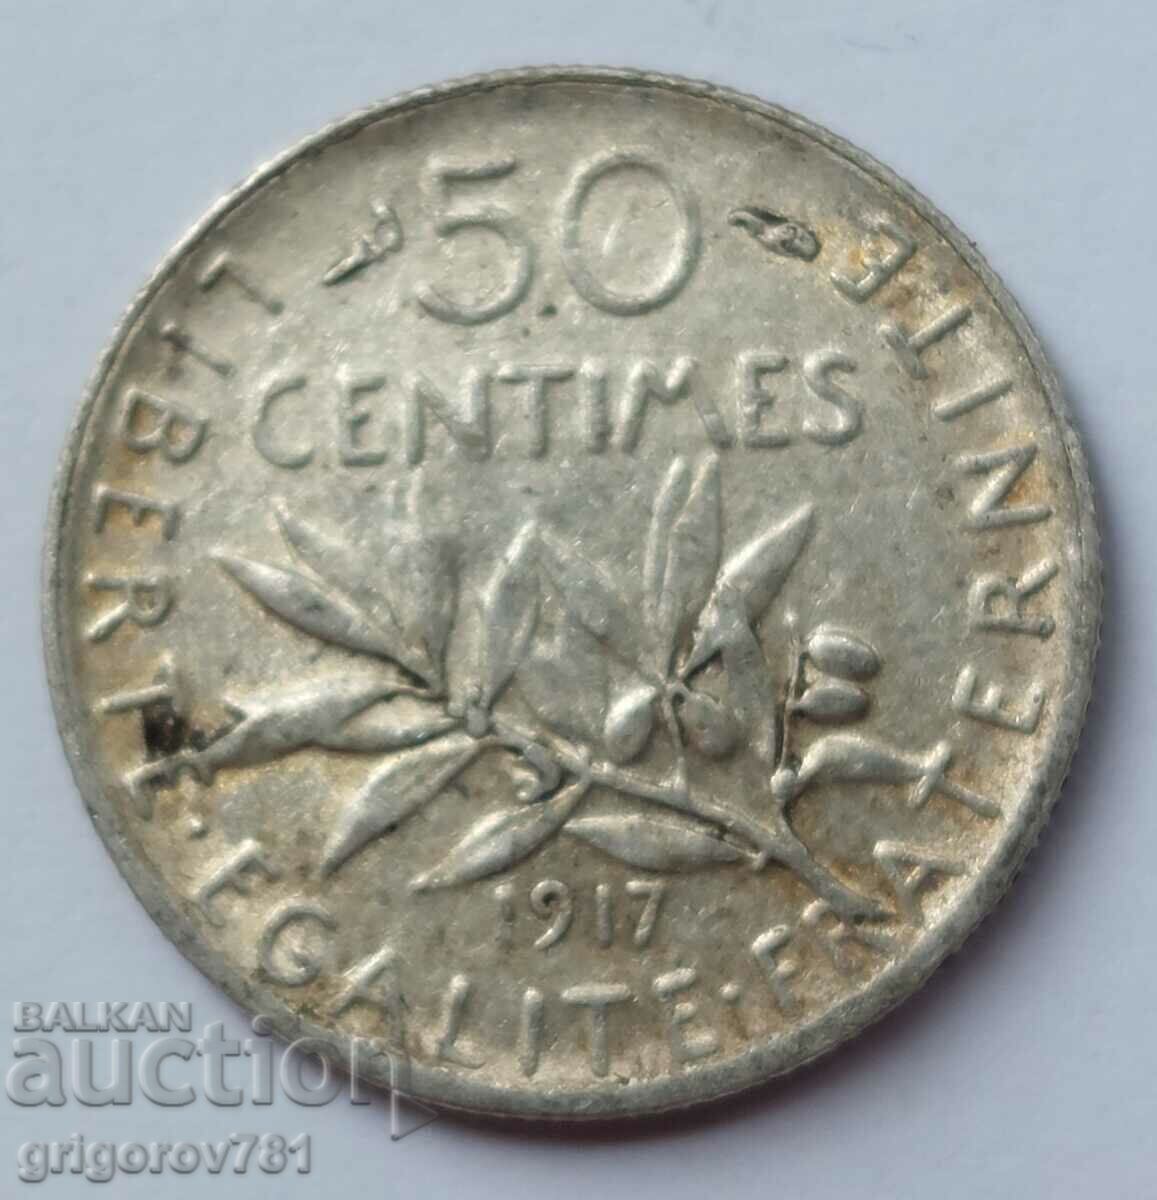 Ασημένιο 50 εκατοστά Γαλλία 1917 - ασημένιο νόμισμα №41